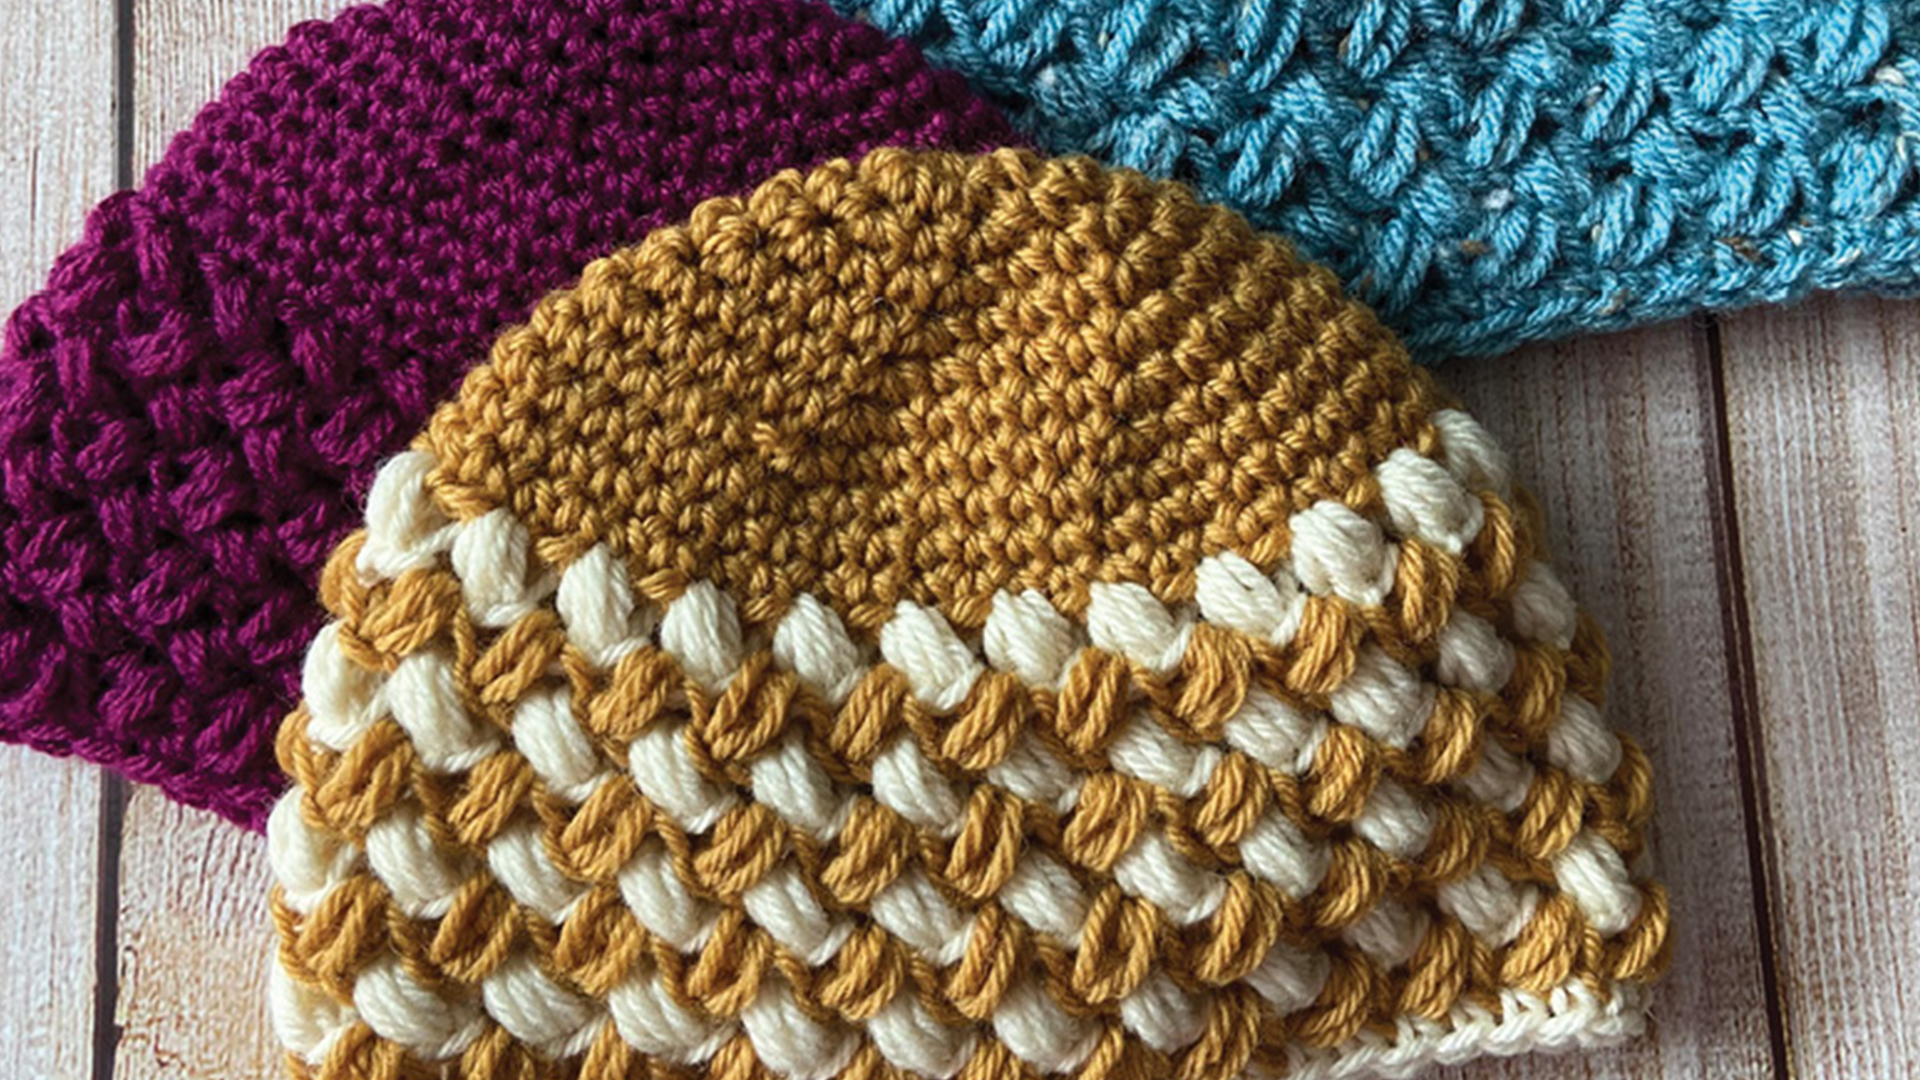 Free Crochet Pattern - Baby Bean-ie